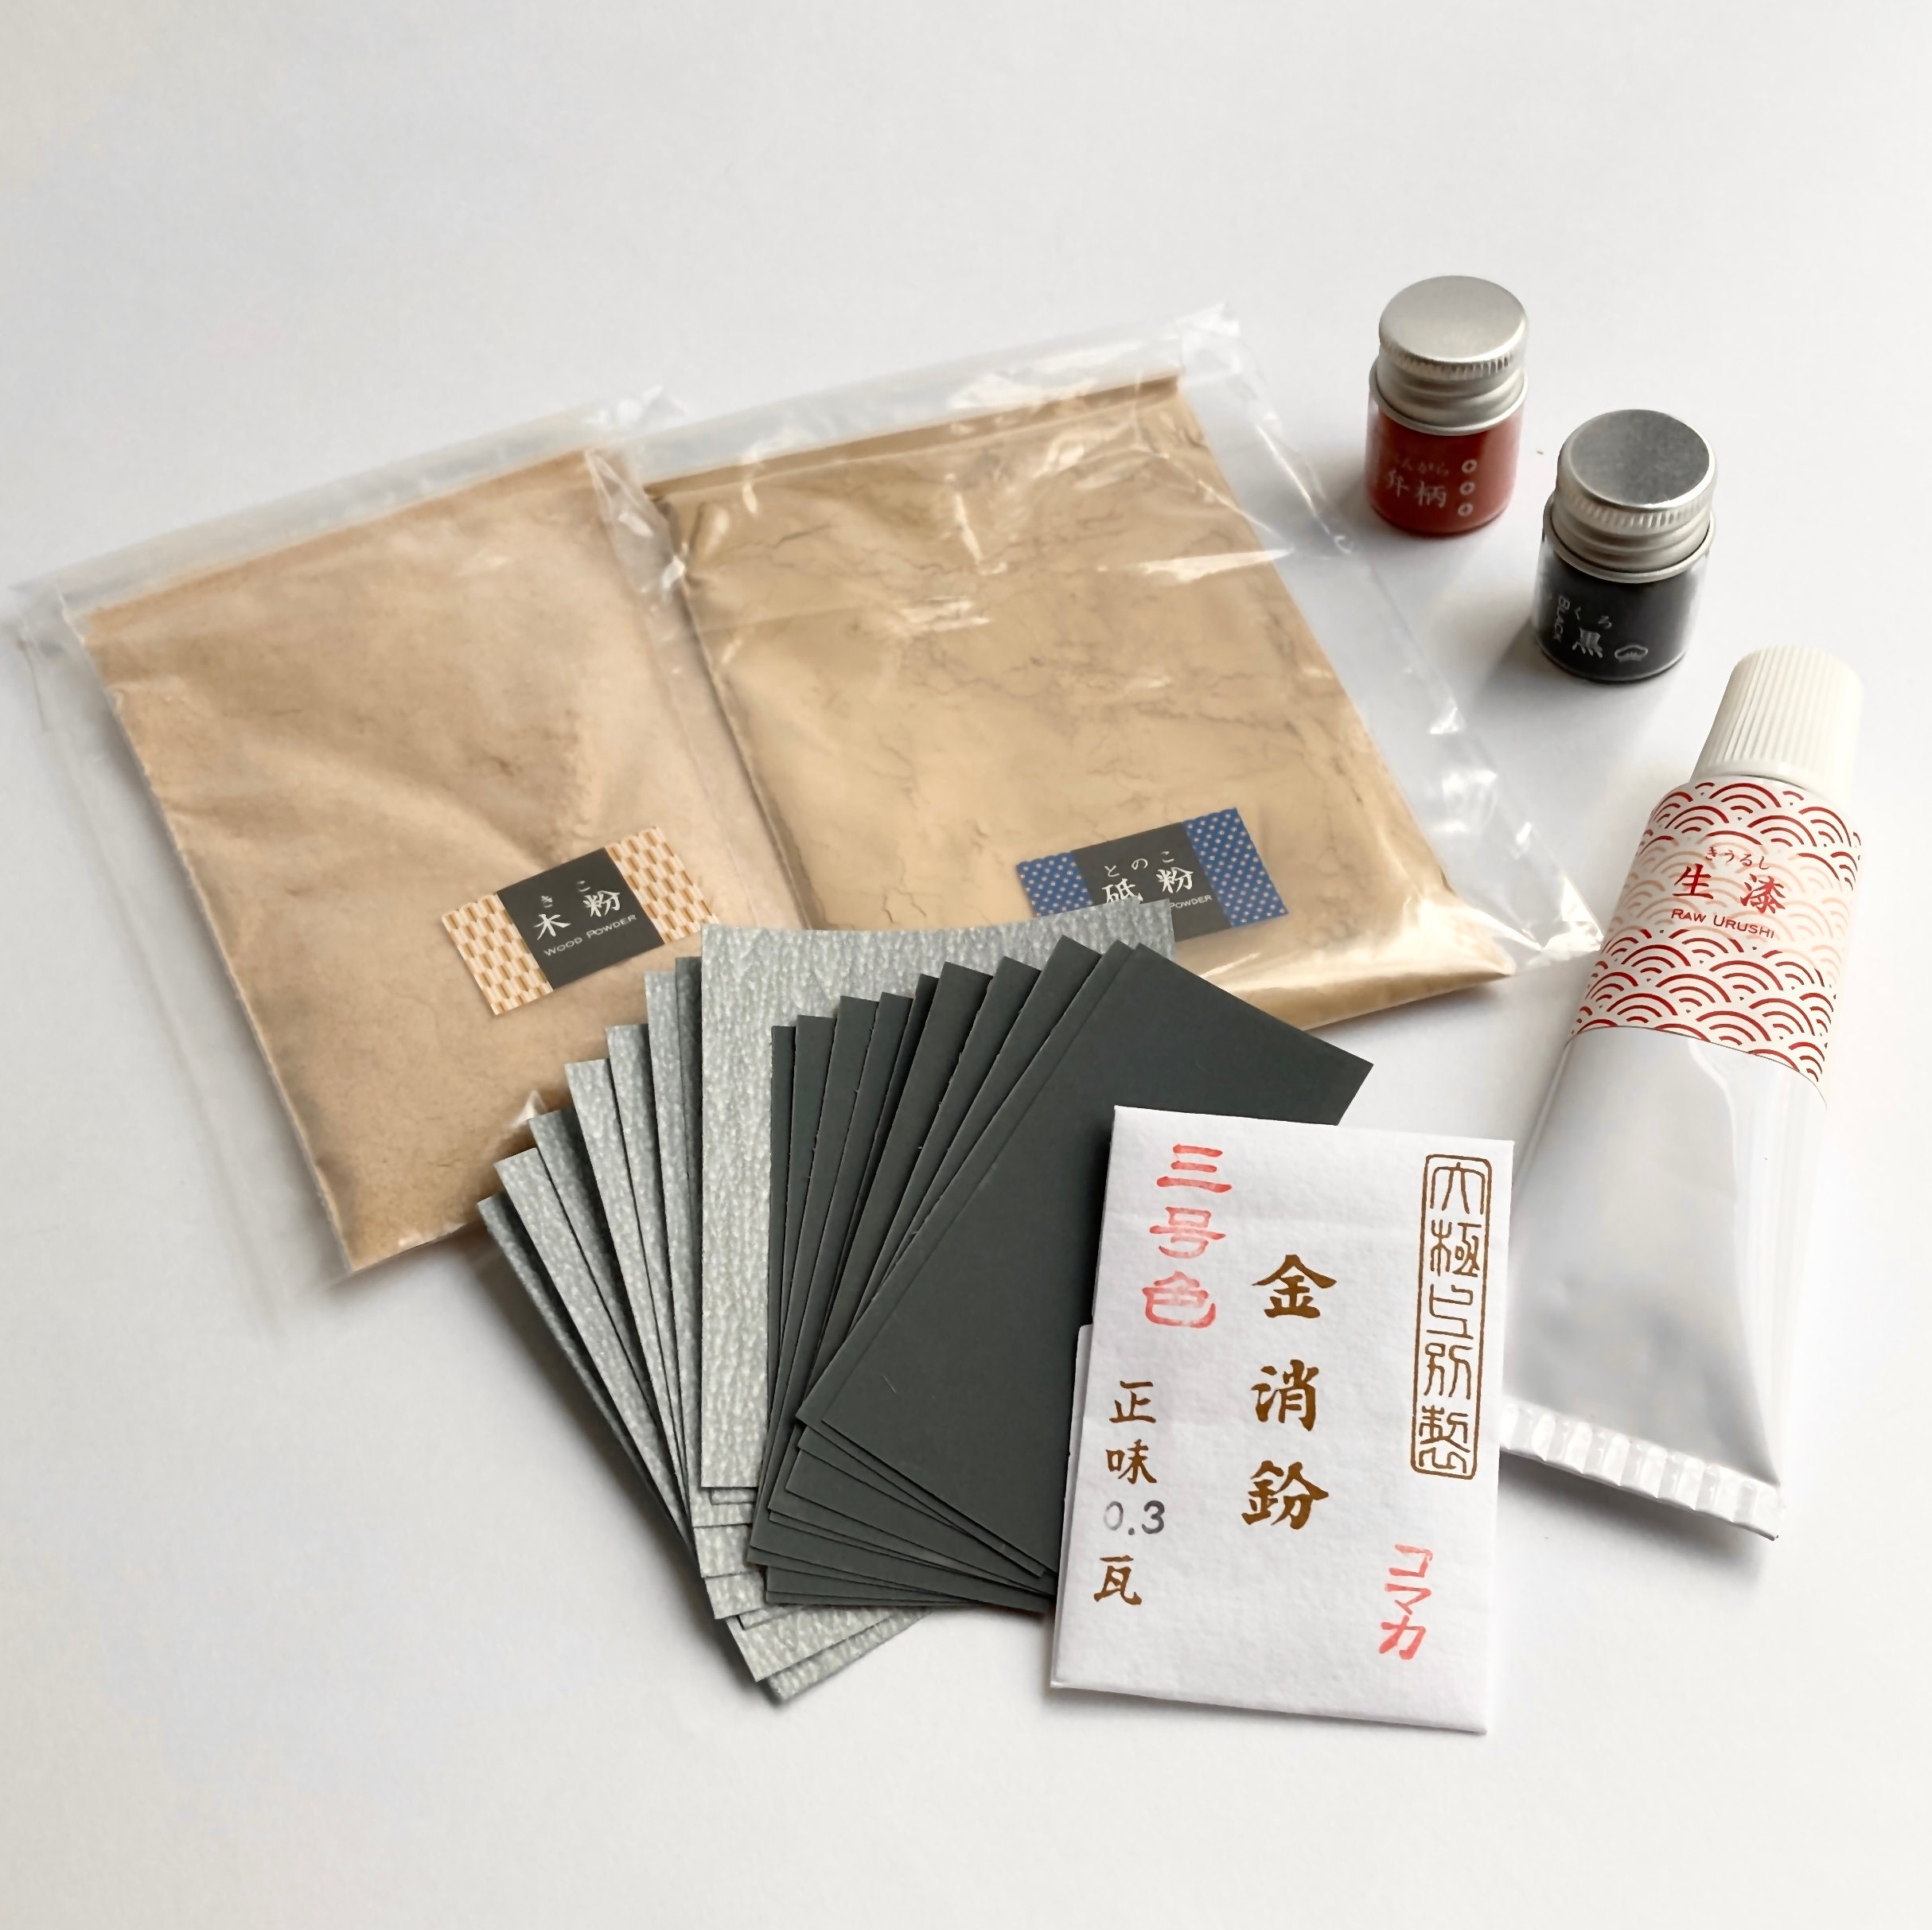 Food Safe Kintsugi Repair Kit Gold Only TSUGUKIT traditional